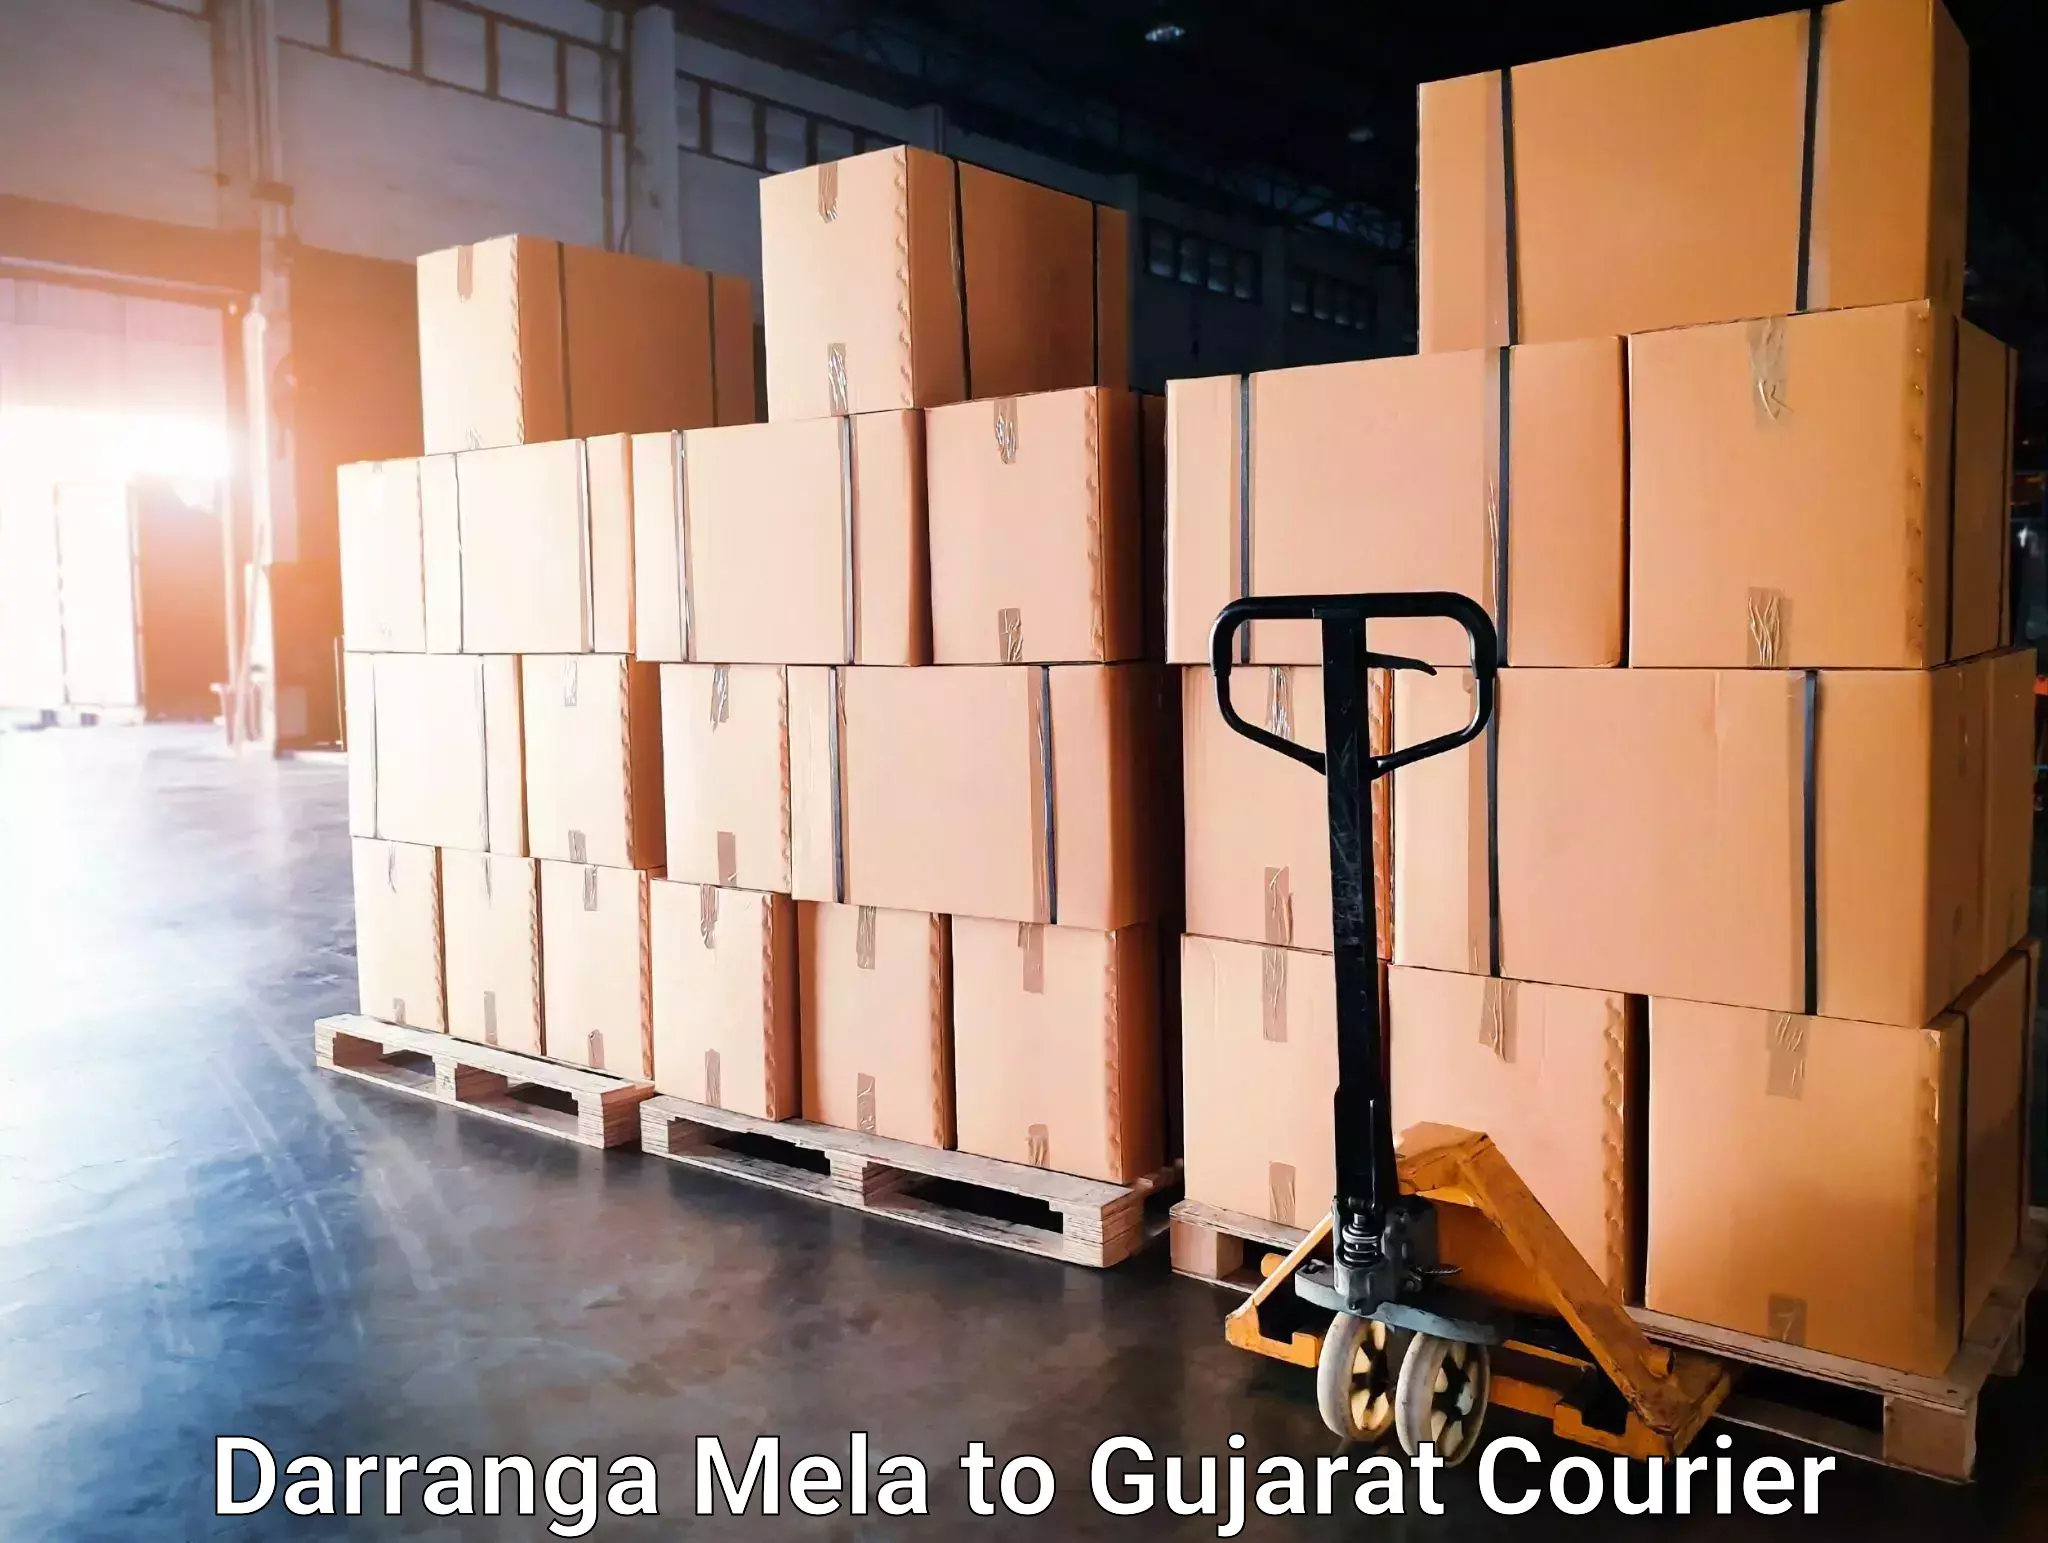 Express package handling Darranga Mela to Gujarat